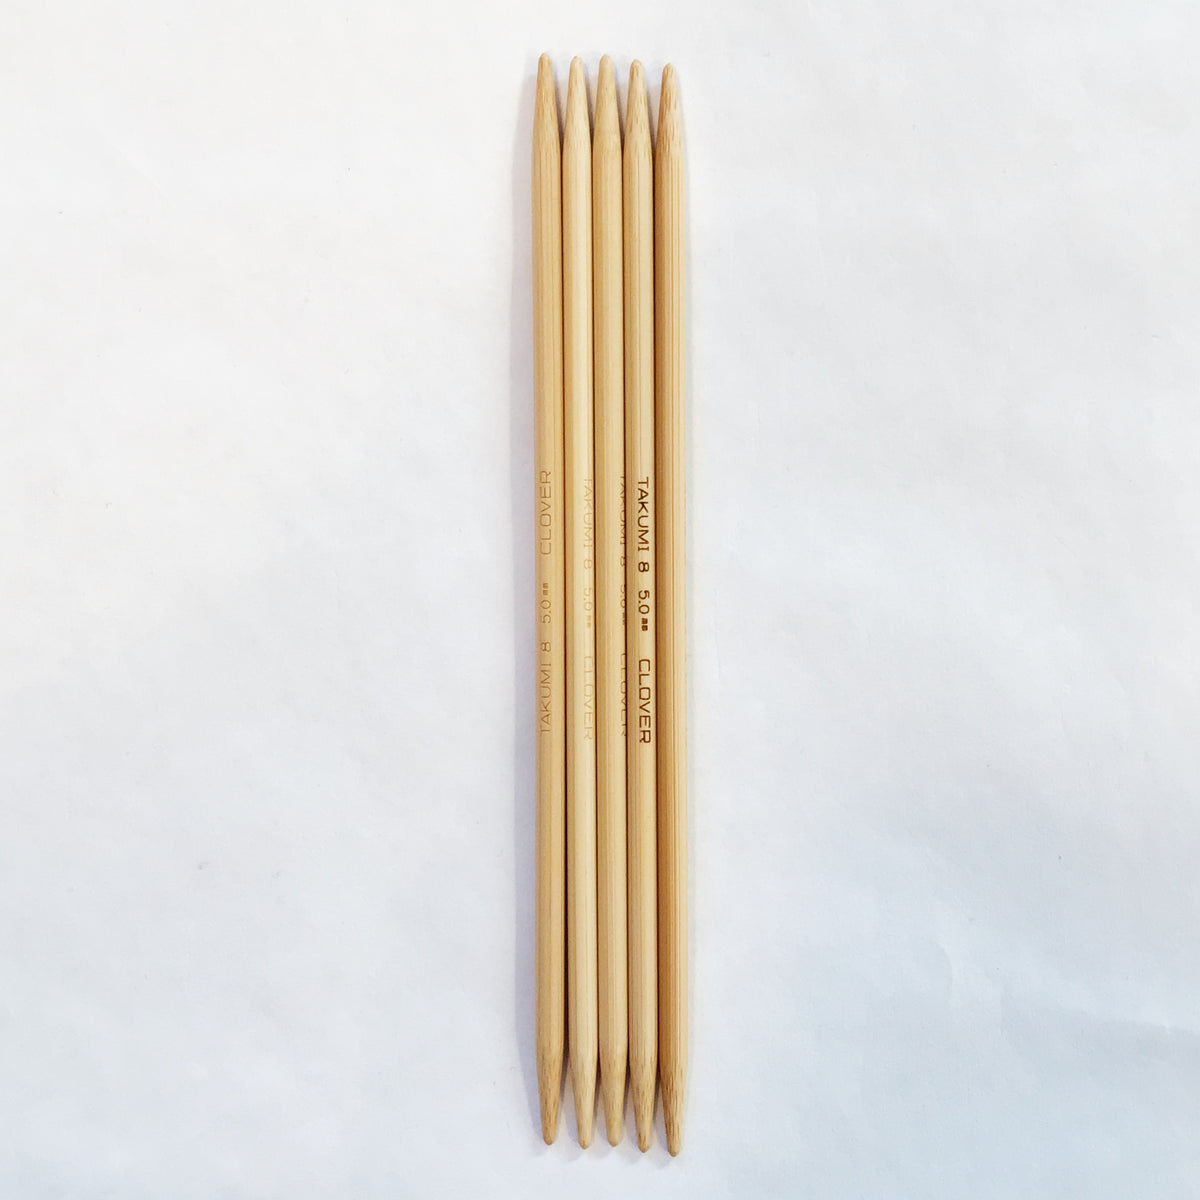 Takumi Bamboo Knitting Needles Double Pointed (7) No. 5